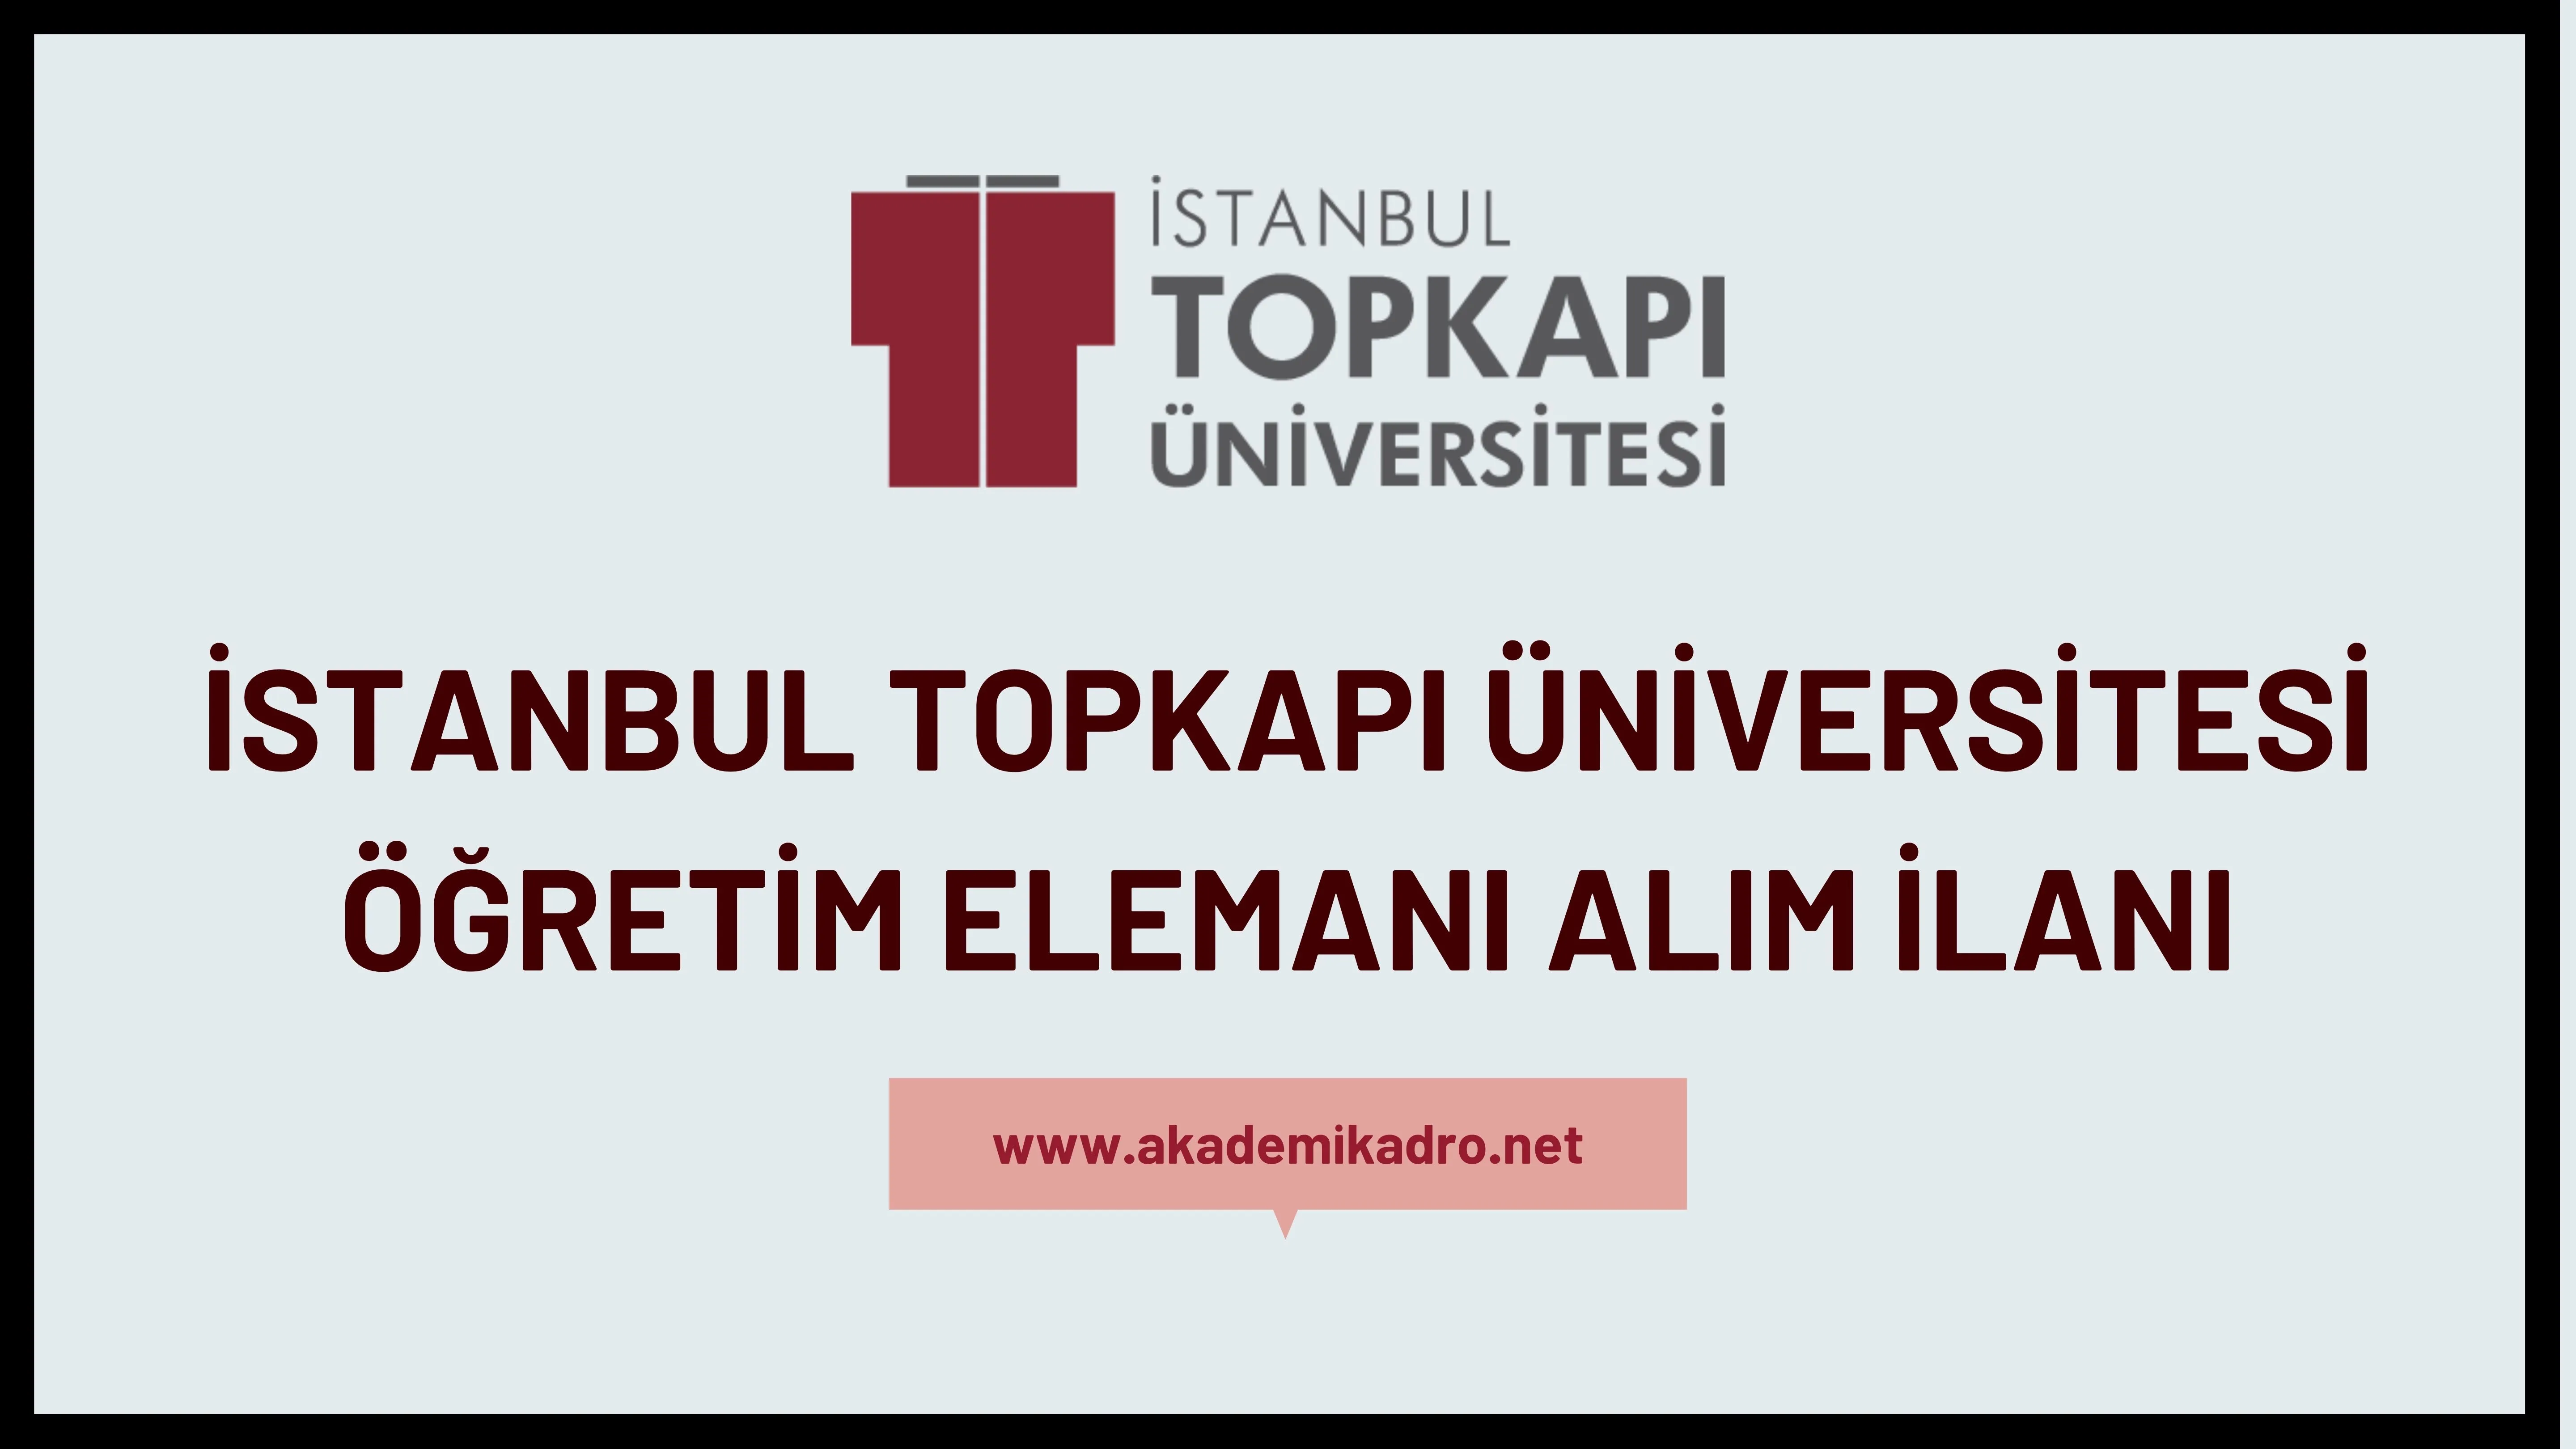 İstanbul Topkapı Üniversitesi Öğretim görevlisi, 5 Araştırma görevlisi ve birçok alandan 16 Öğretim üyesi alacak.